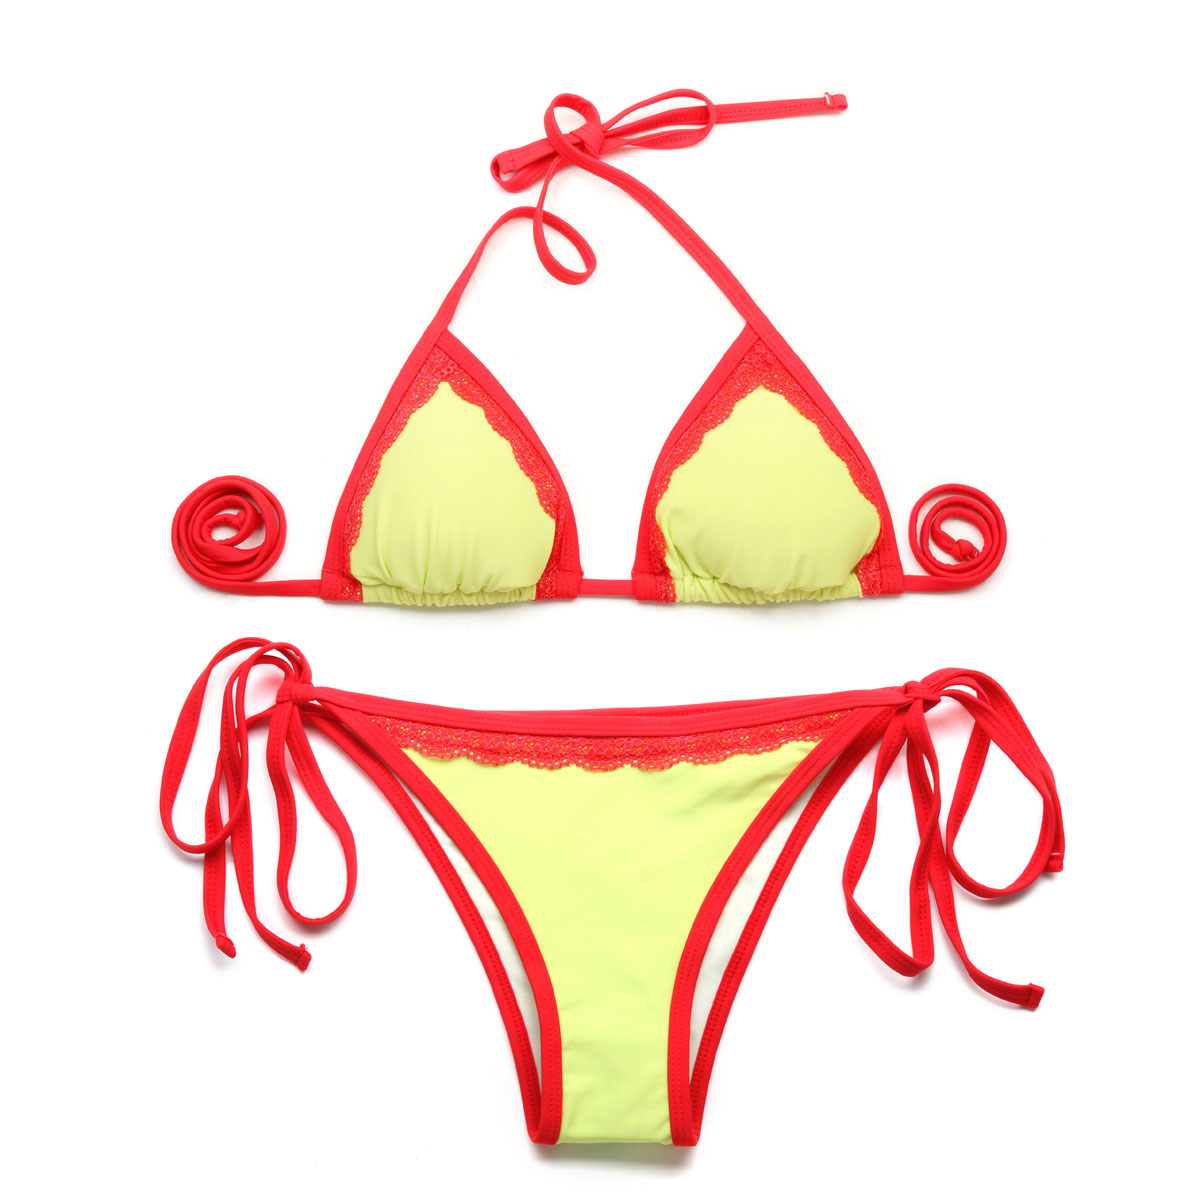 2015 Bikini Greenish Yellow + Double Red Lace Trim Triangle Top With Classic Cut Bottom Bikini Swimwear Suit